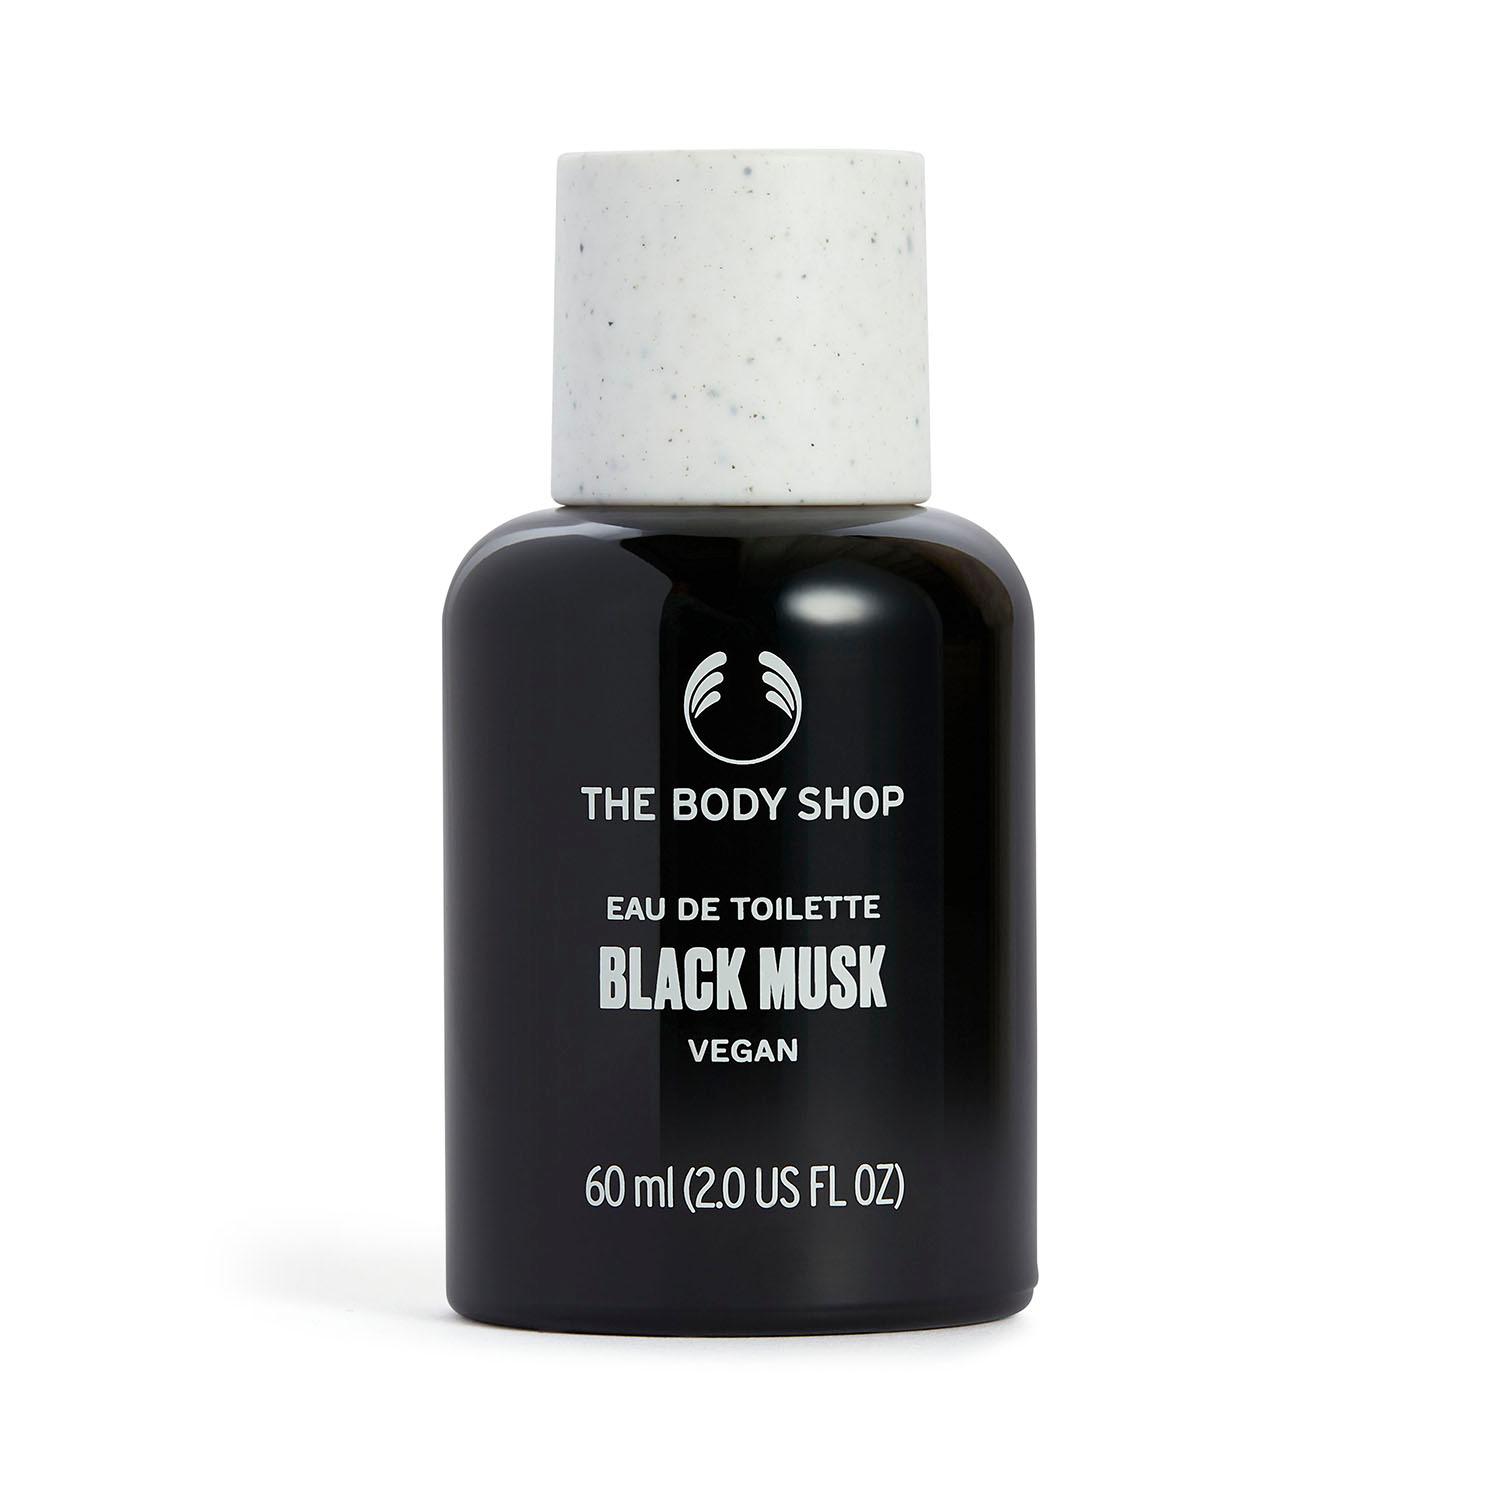 The Body Shop | The Body Shop Black Musk Eau De Toilette (60 ml)